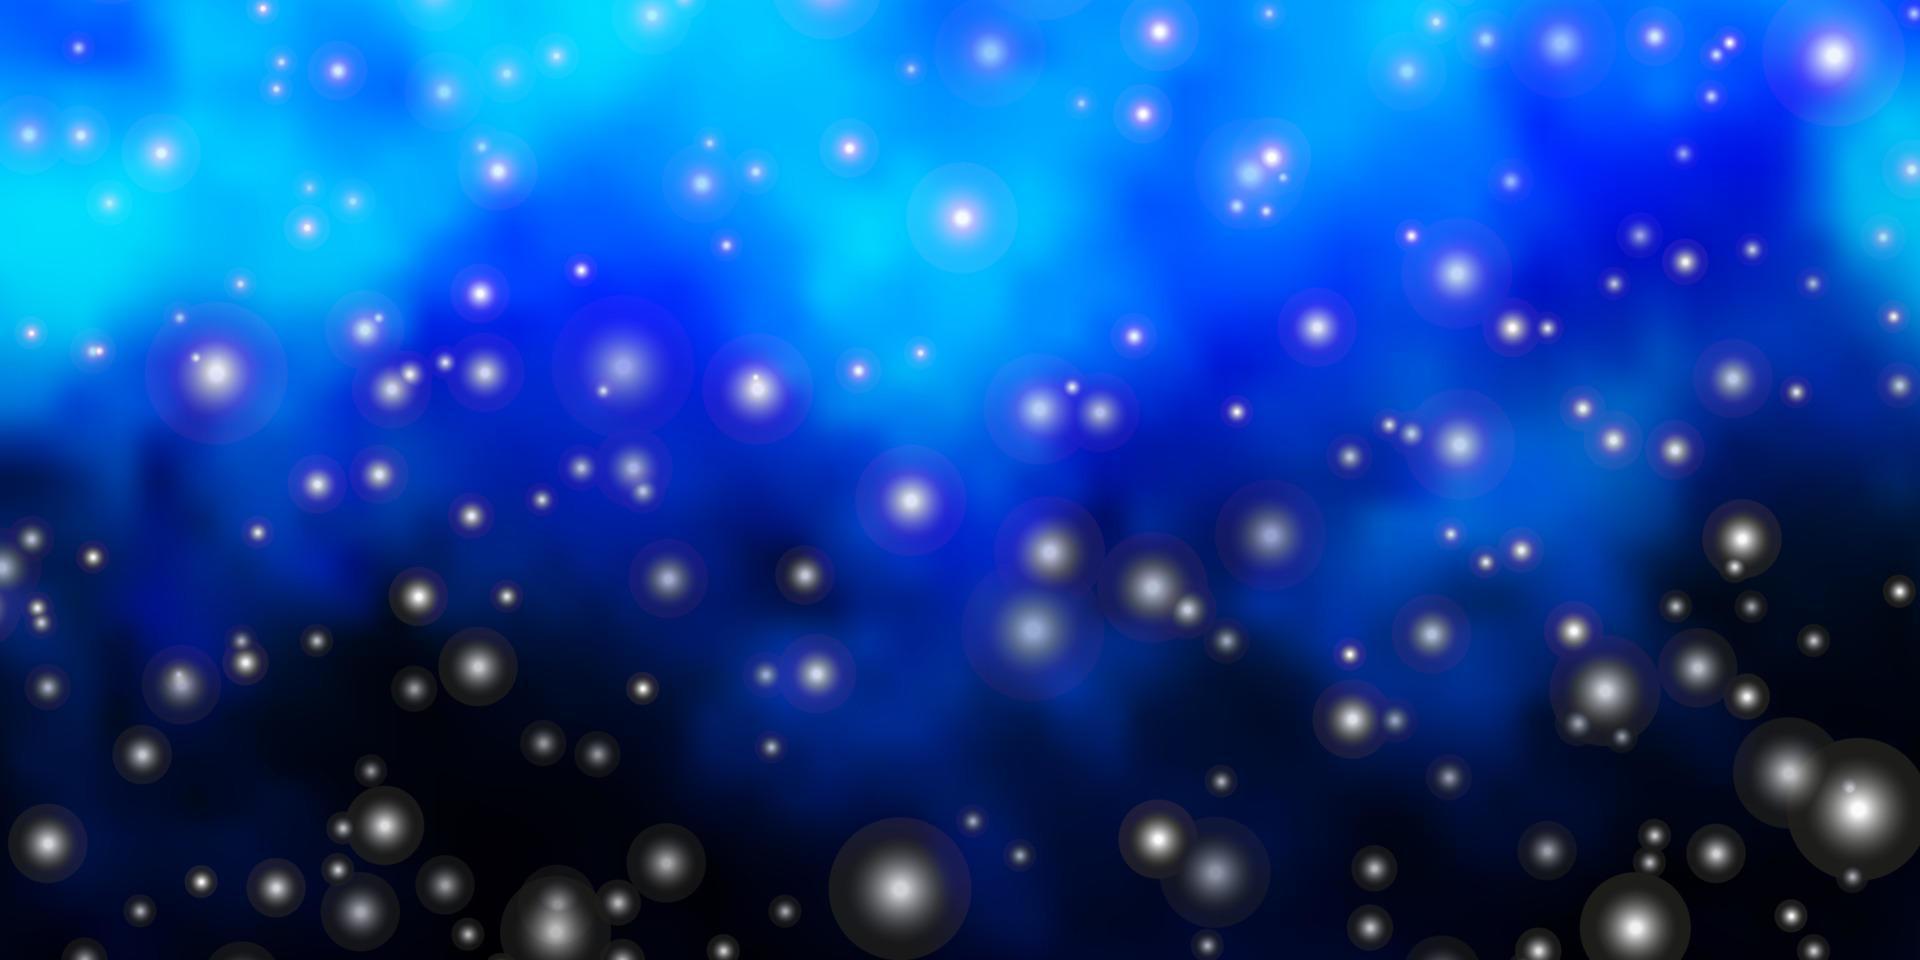 disposition de vecteur bleu foncé avec des étoiles brillantes.